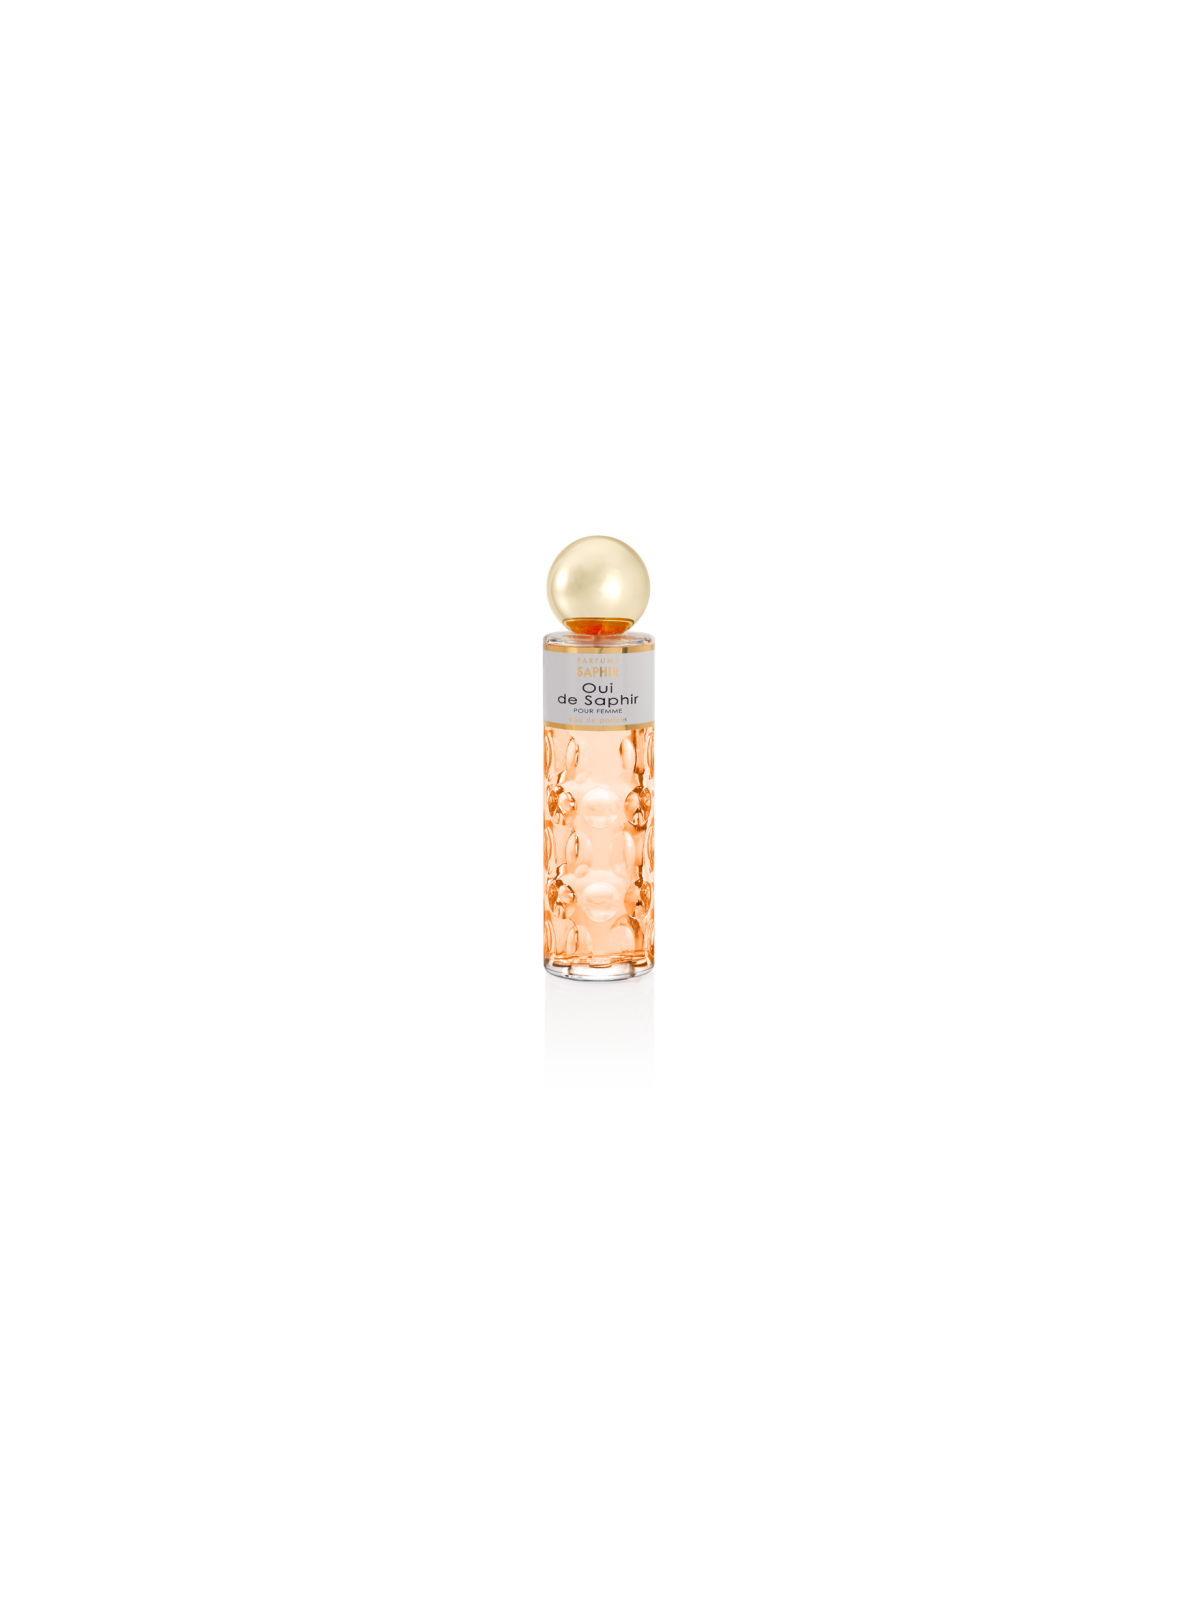 Comprar Perfume SAPHIR Oui de Saphir 200ml. en Perfumes para mujer por sólo 13,90 € o un precio específico de 13,90 € en Thalie Care